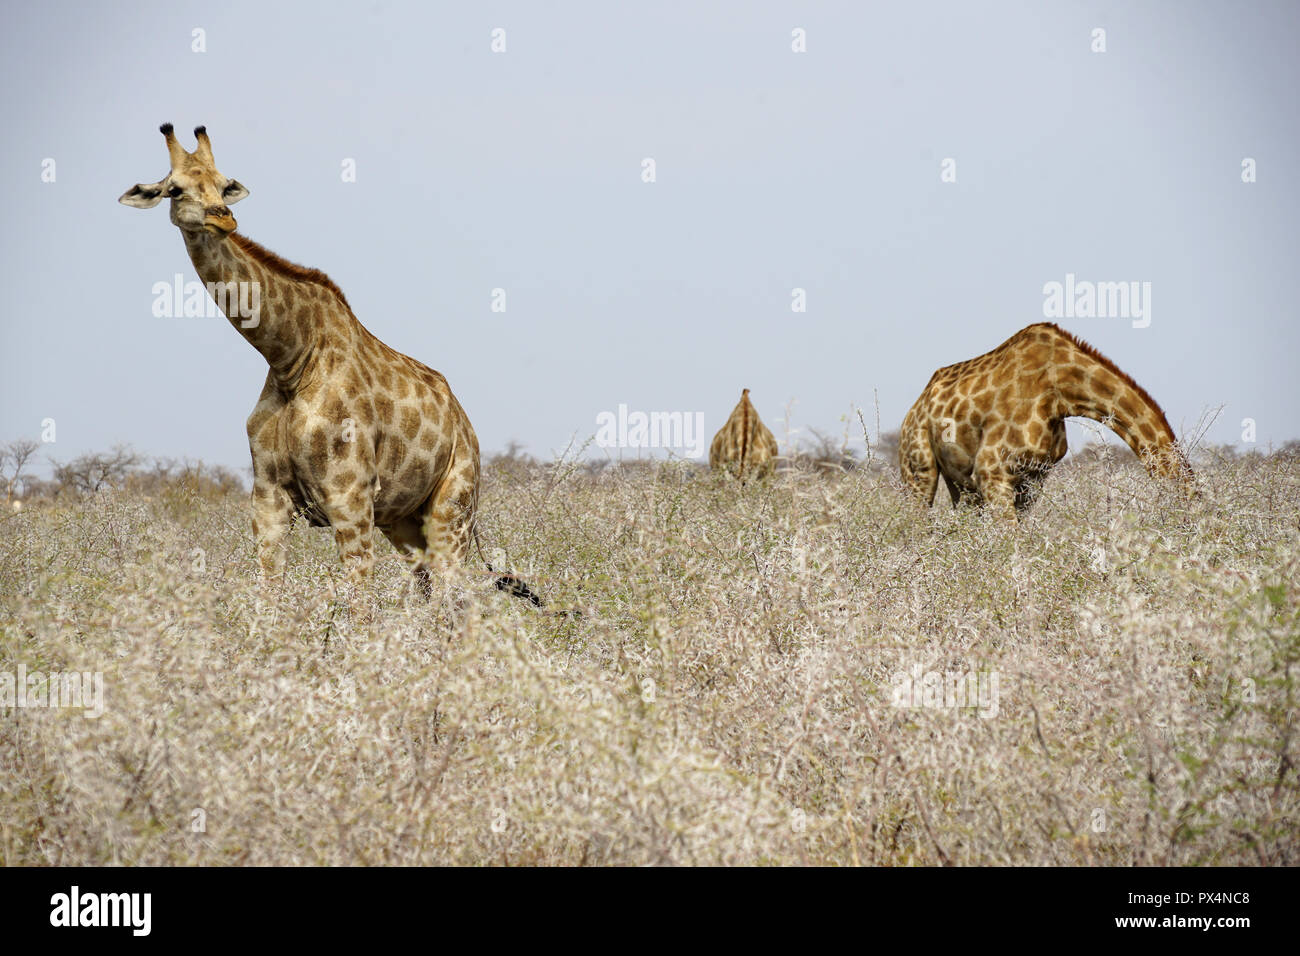 Fressen Giraffen un trockenen Dornbüschen, Etosha Nationalpark, Republik Namibia, Afrika Foto Stock